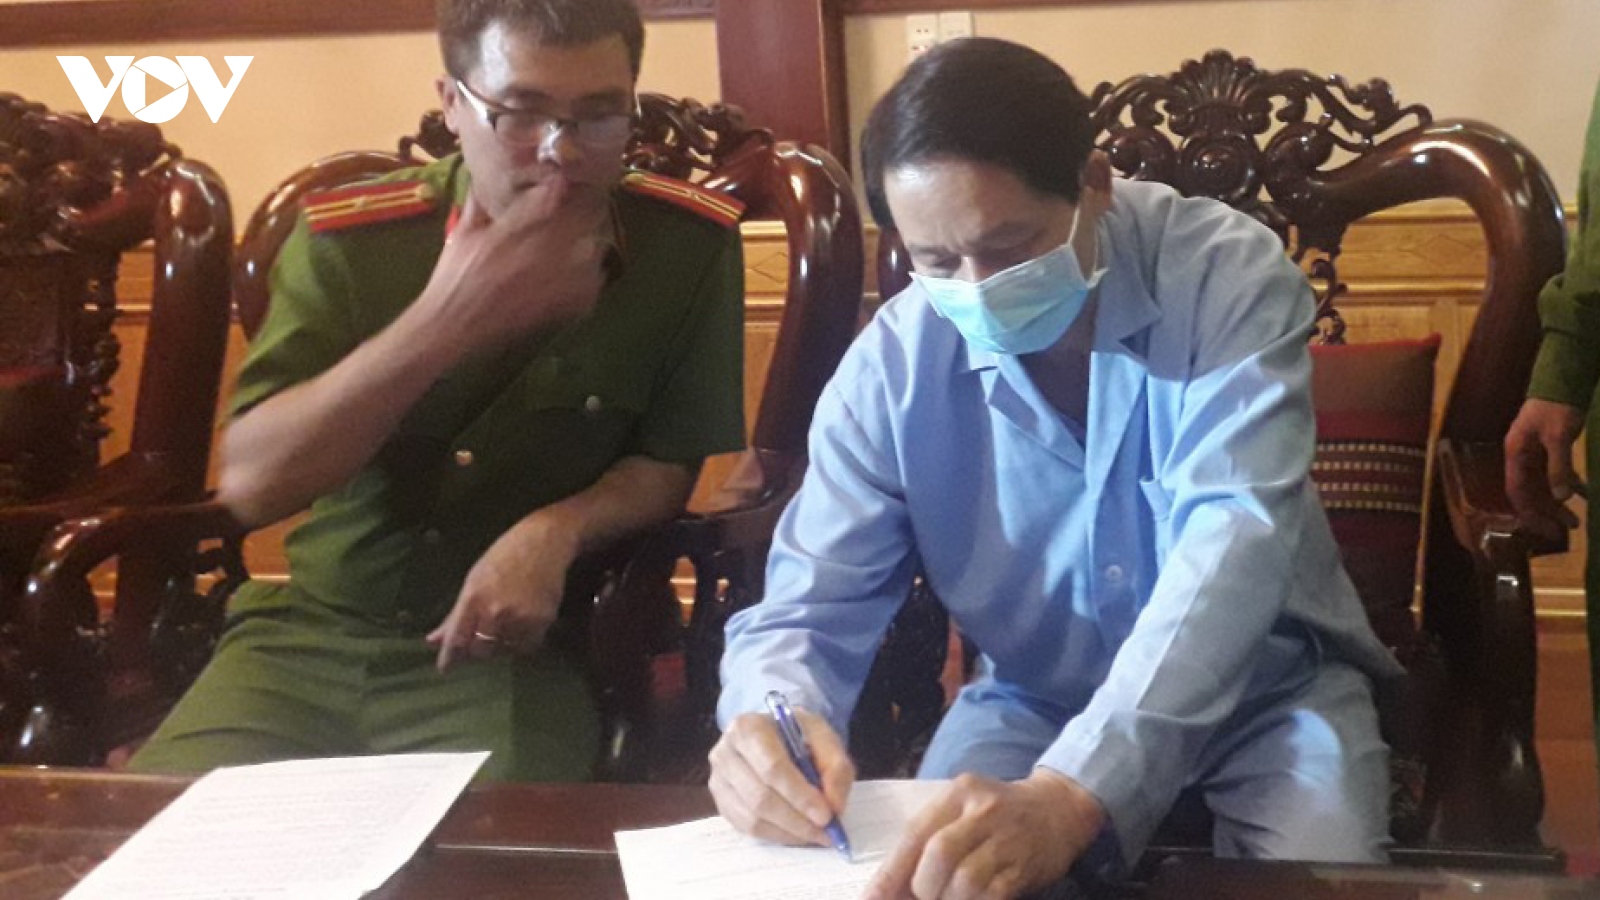 Sai phạm trong đấu thầu thuốc, thêm 2 cán bộ Sở Y tế Đắk Lắk bị khởi tố